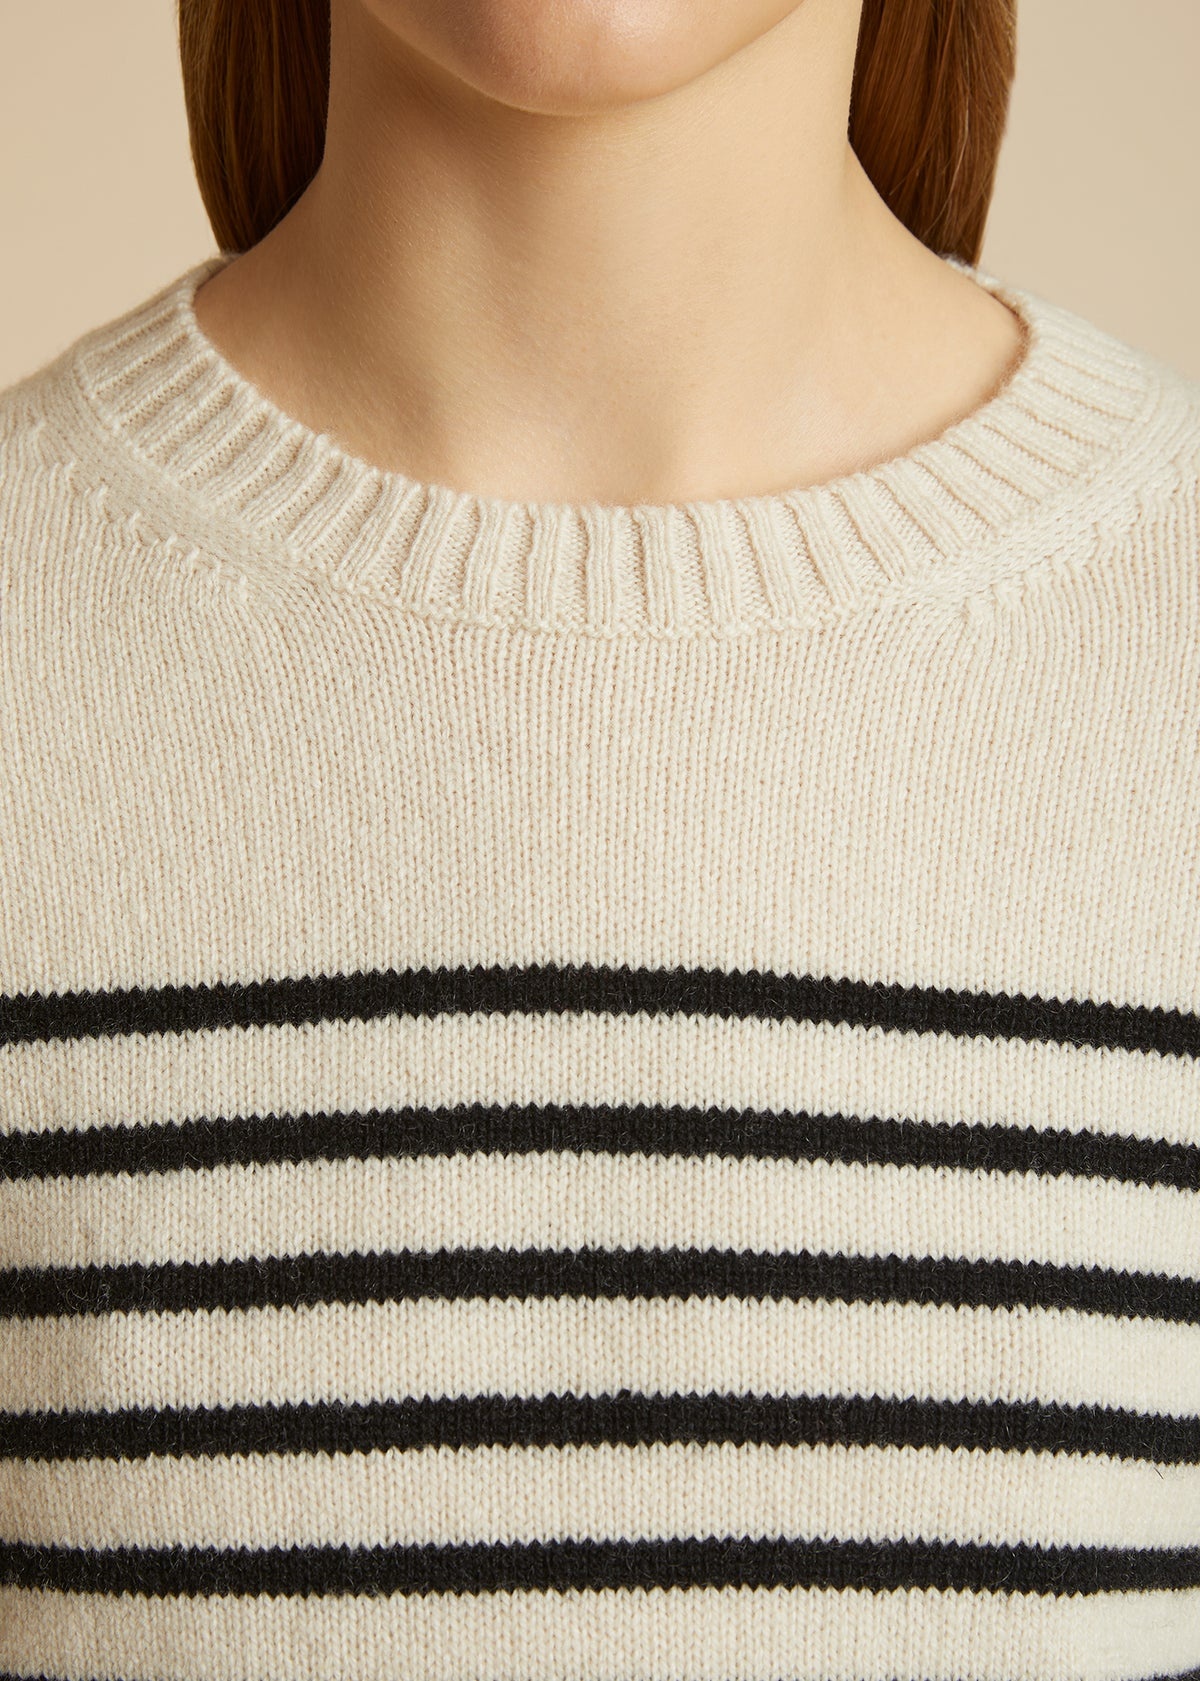 The Diletta Sweater in Magnolia and Black Stripe - 5